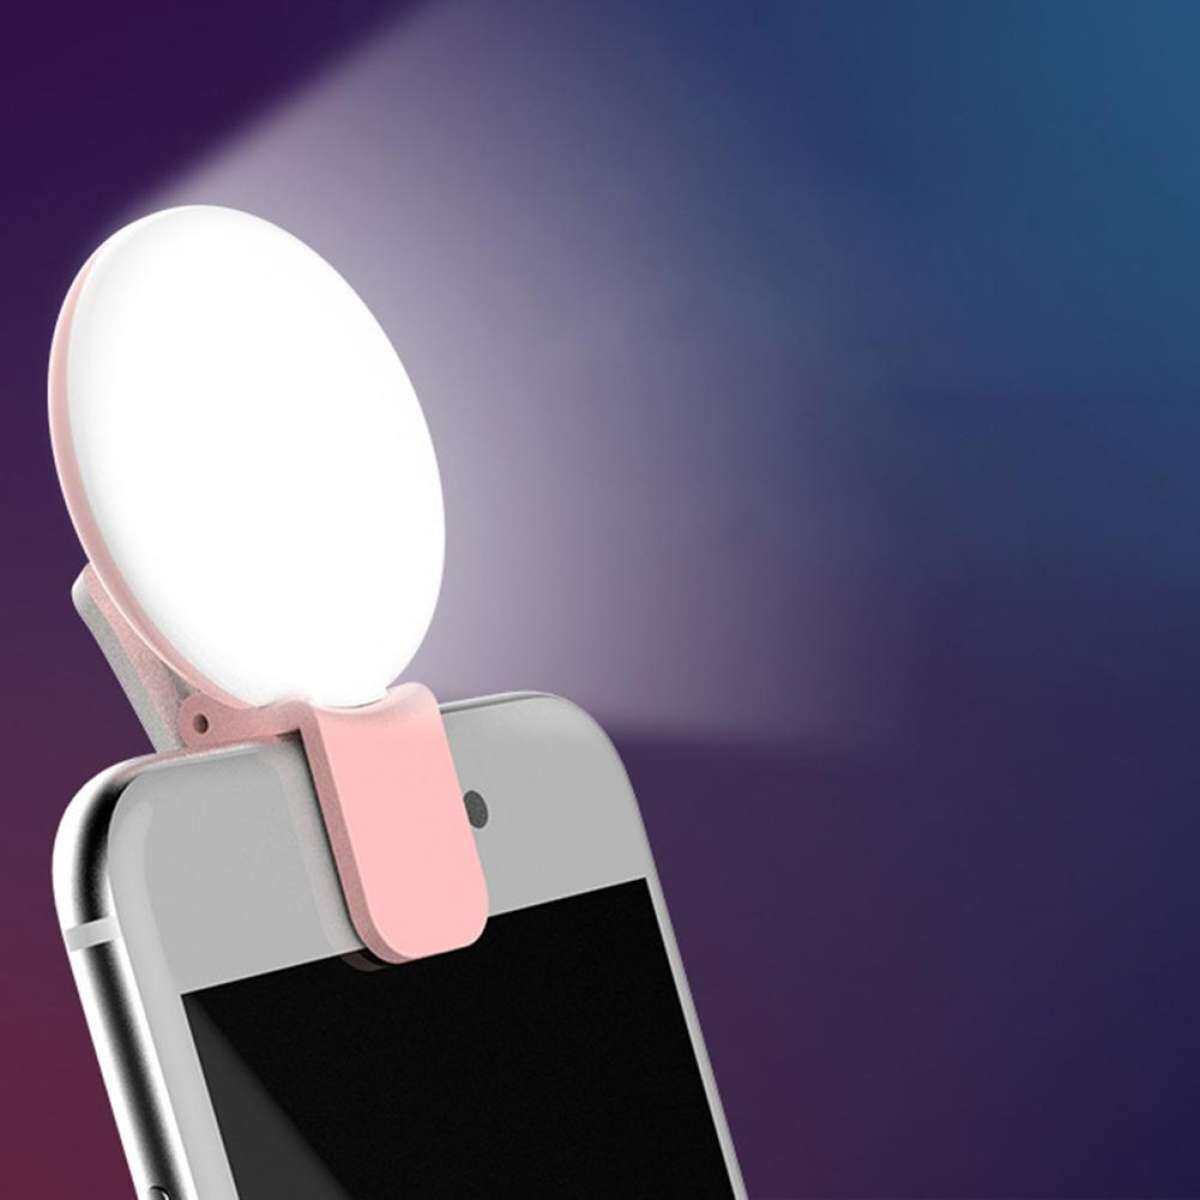 [ MÀU HỒNG ] Đèn LED Kẹp Điện Thoại Chụp Hình Selfie có Pin Sạc USB Trợ Sáng Di Động